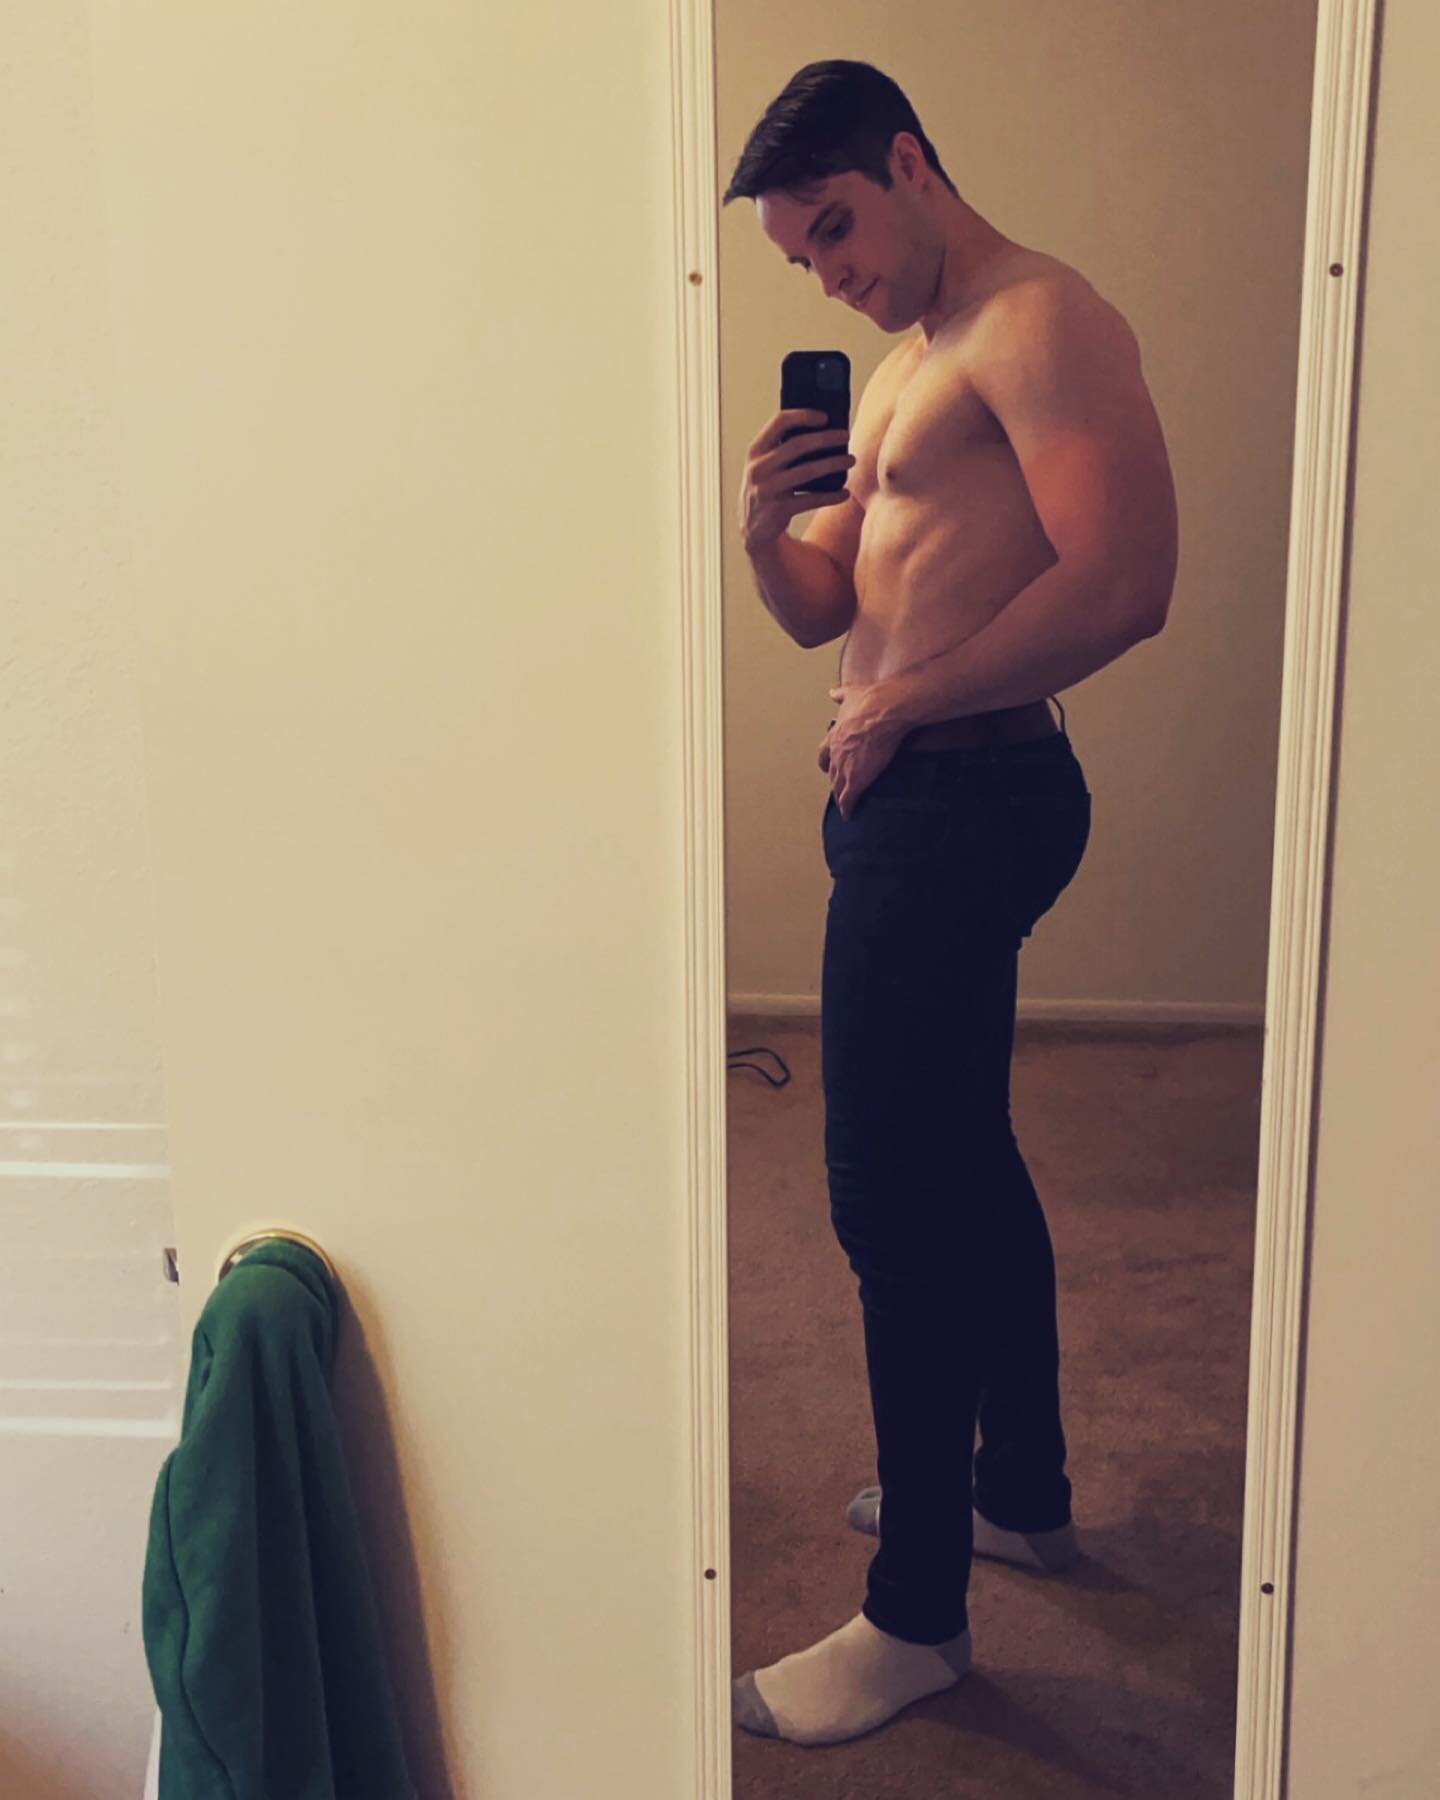 Why, yes @uniqlo I AM available to model your jeans anytime. 
.
.
.
#jeans #model #uniqlo #fitnessmodel #jeansmodel #gayguy #gayfit #gay #gayfitness #gayhunk #gayjock #gaypride #gayman #gaydude #gaymen #gaystagram #gayboy #gaymuscle #instagay #muscle